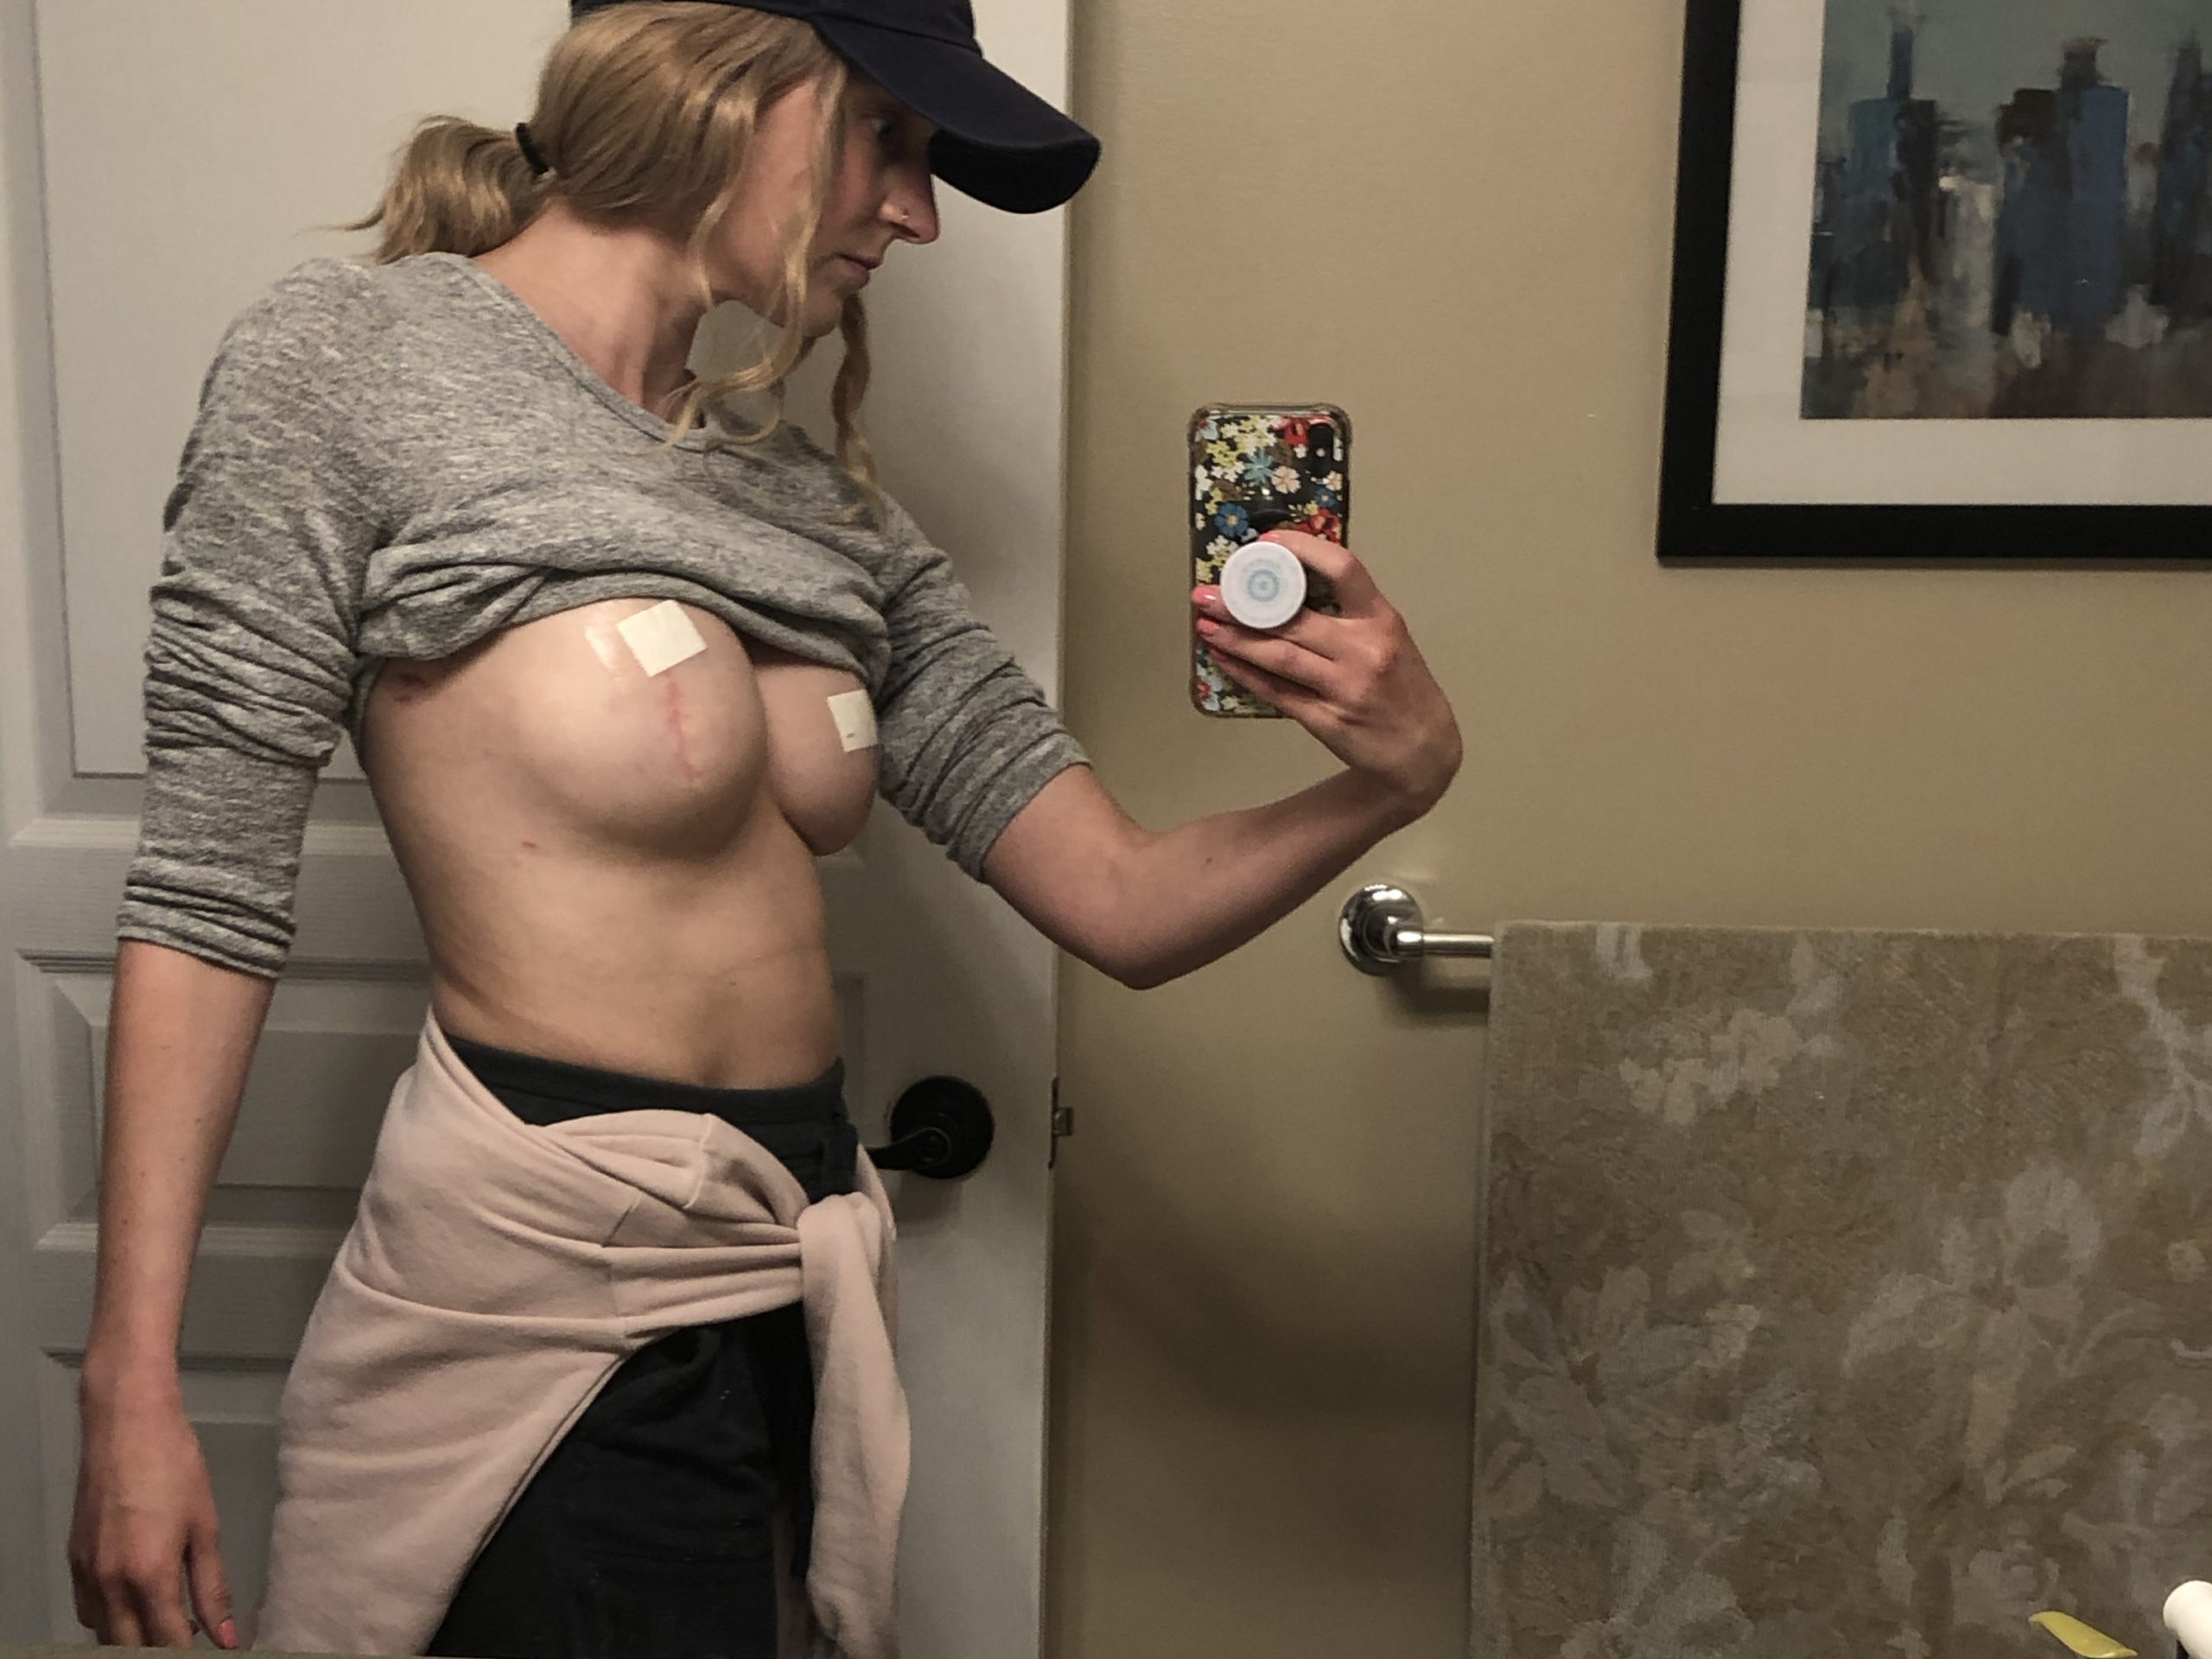 Post mastectomy op selfie